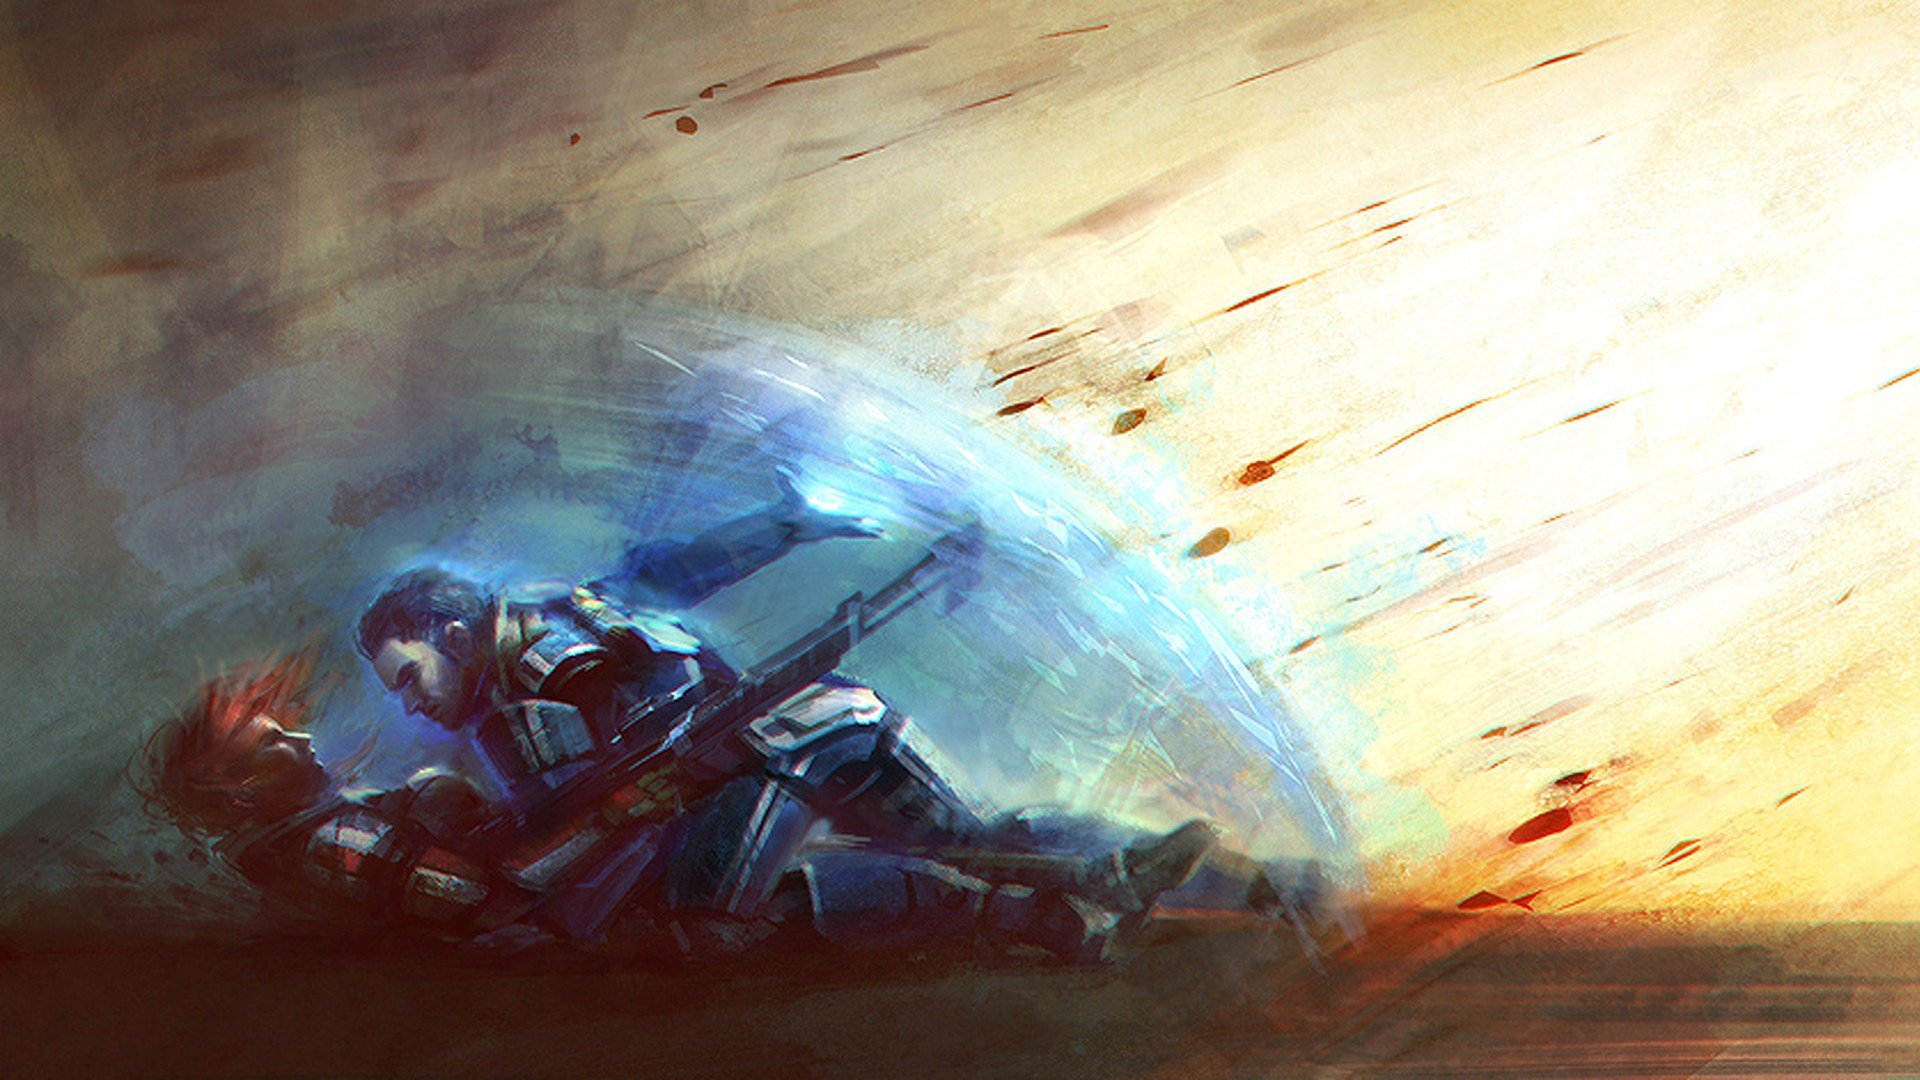 Mass Effect, Concept art Wallpaper